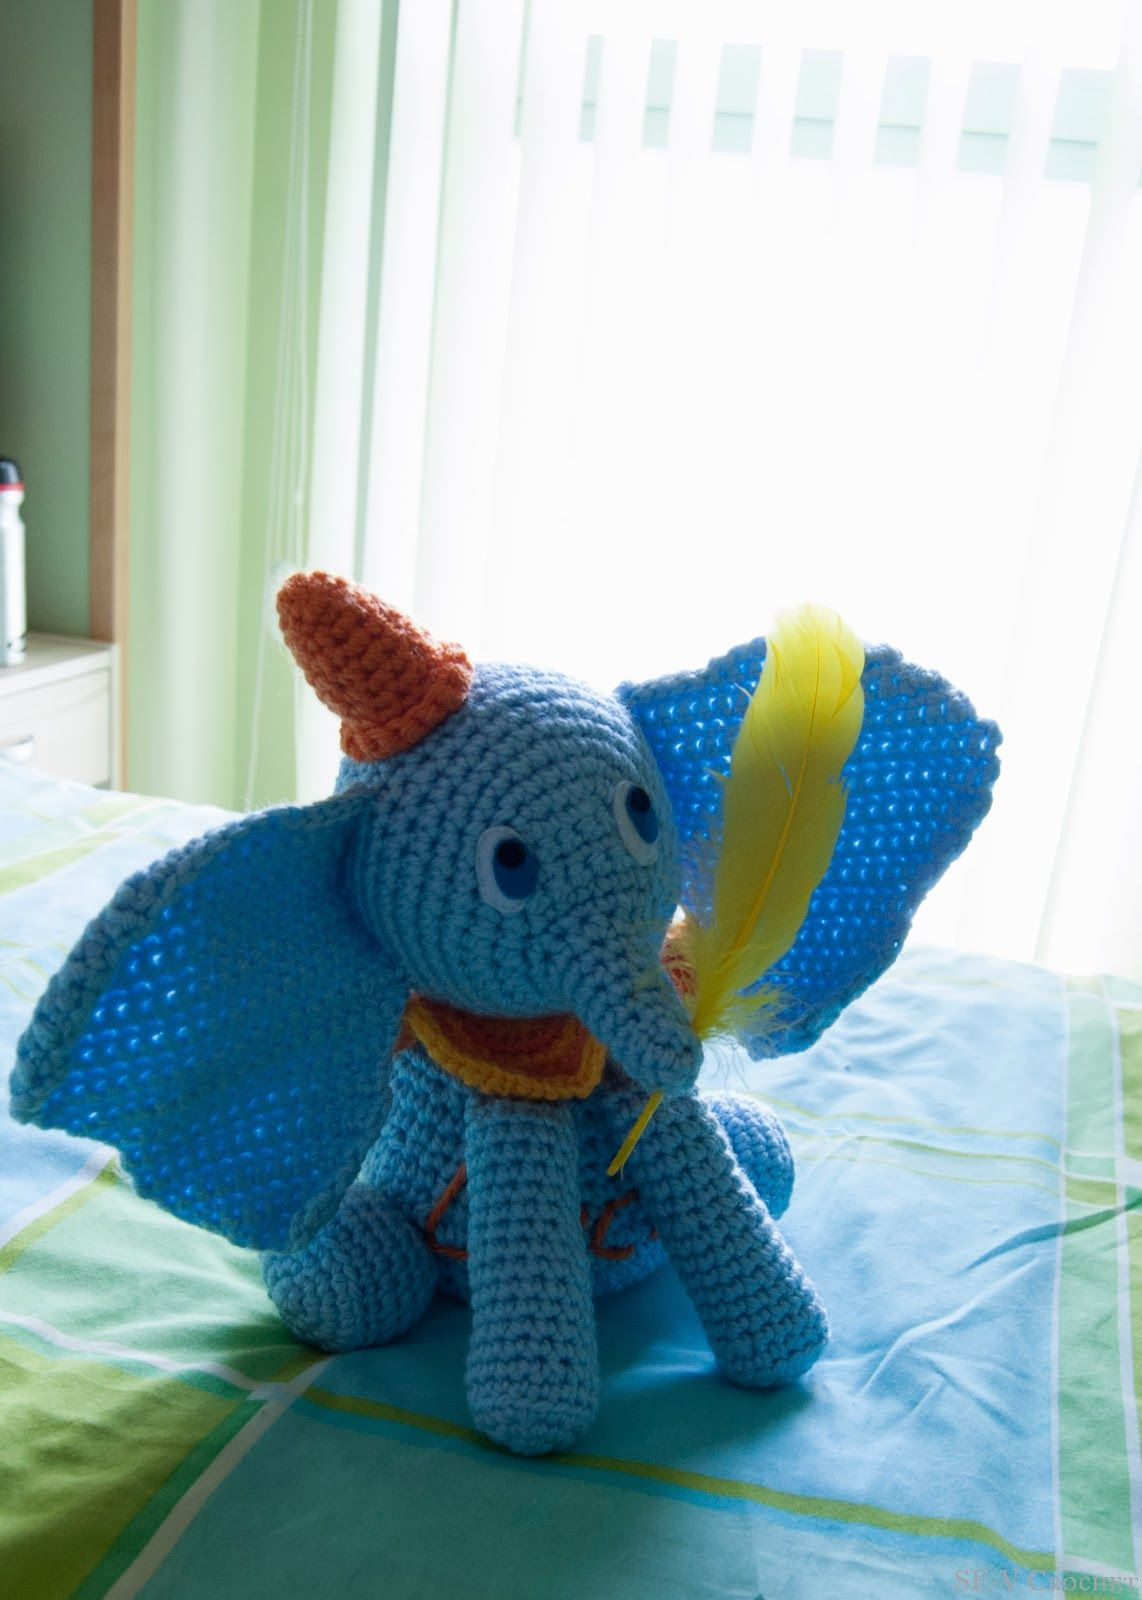 Crochet Dumbo Pattern Elefante Dumbo Amigurumi Crochet Projects Dumbo The Elephant